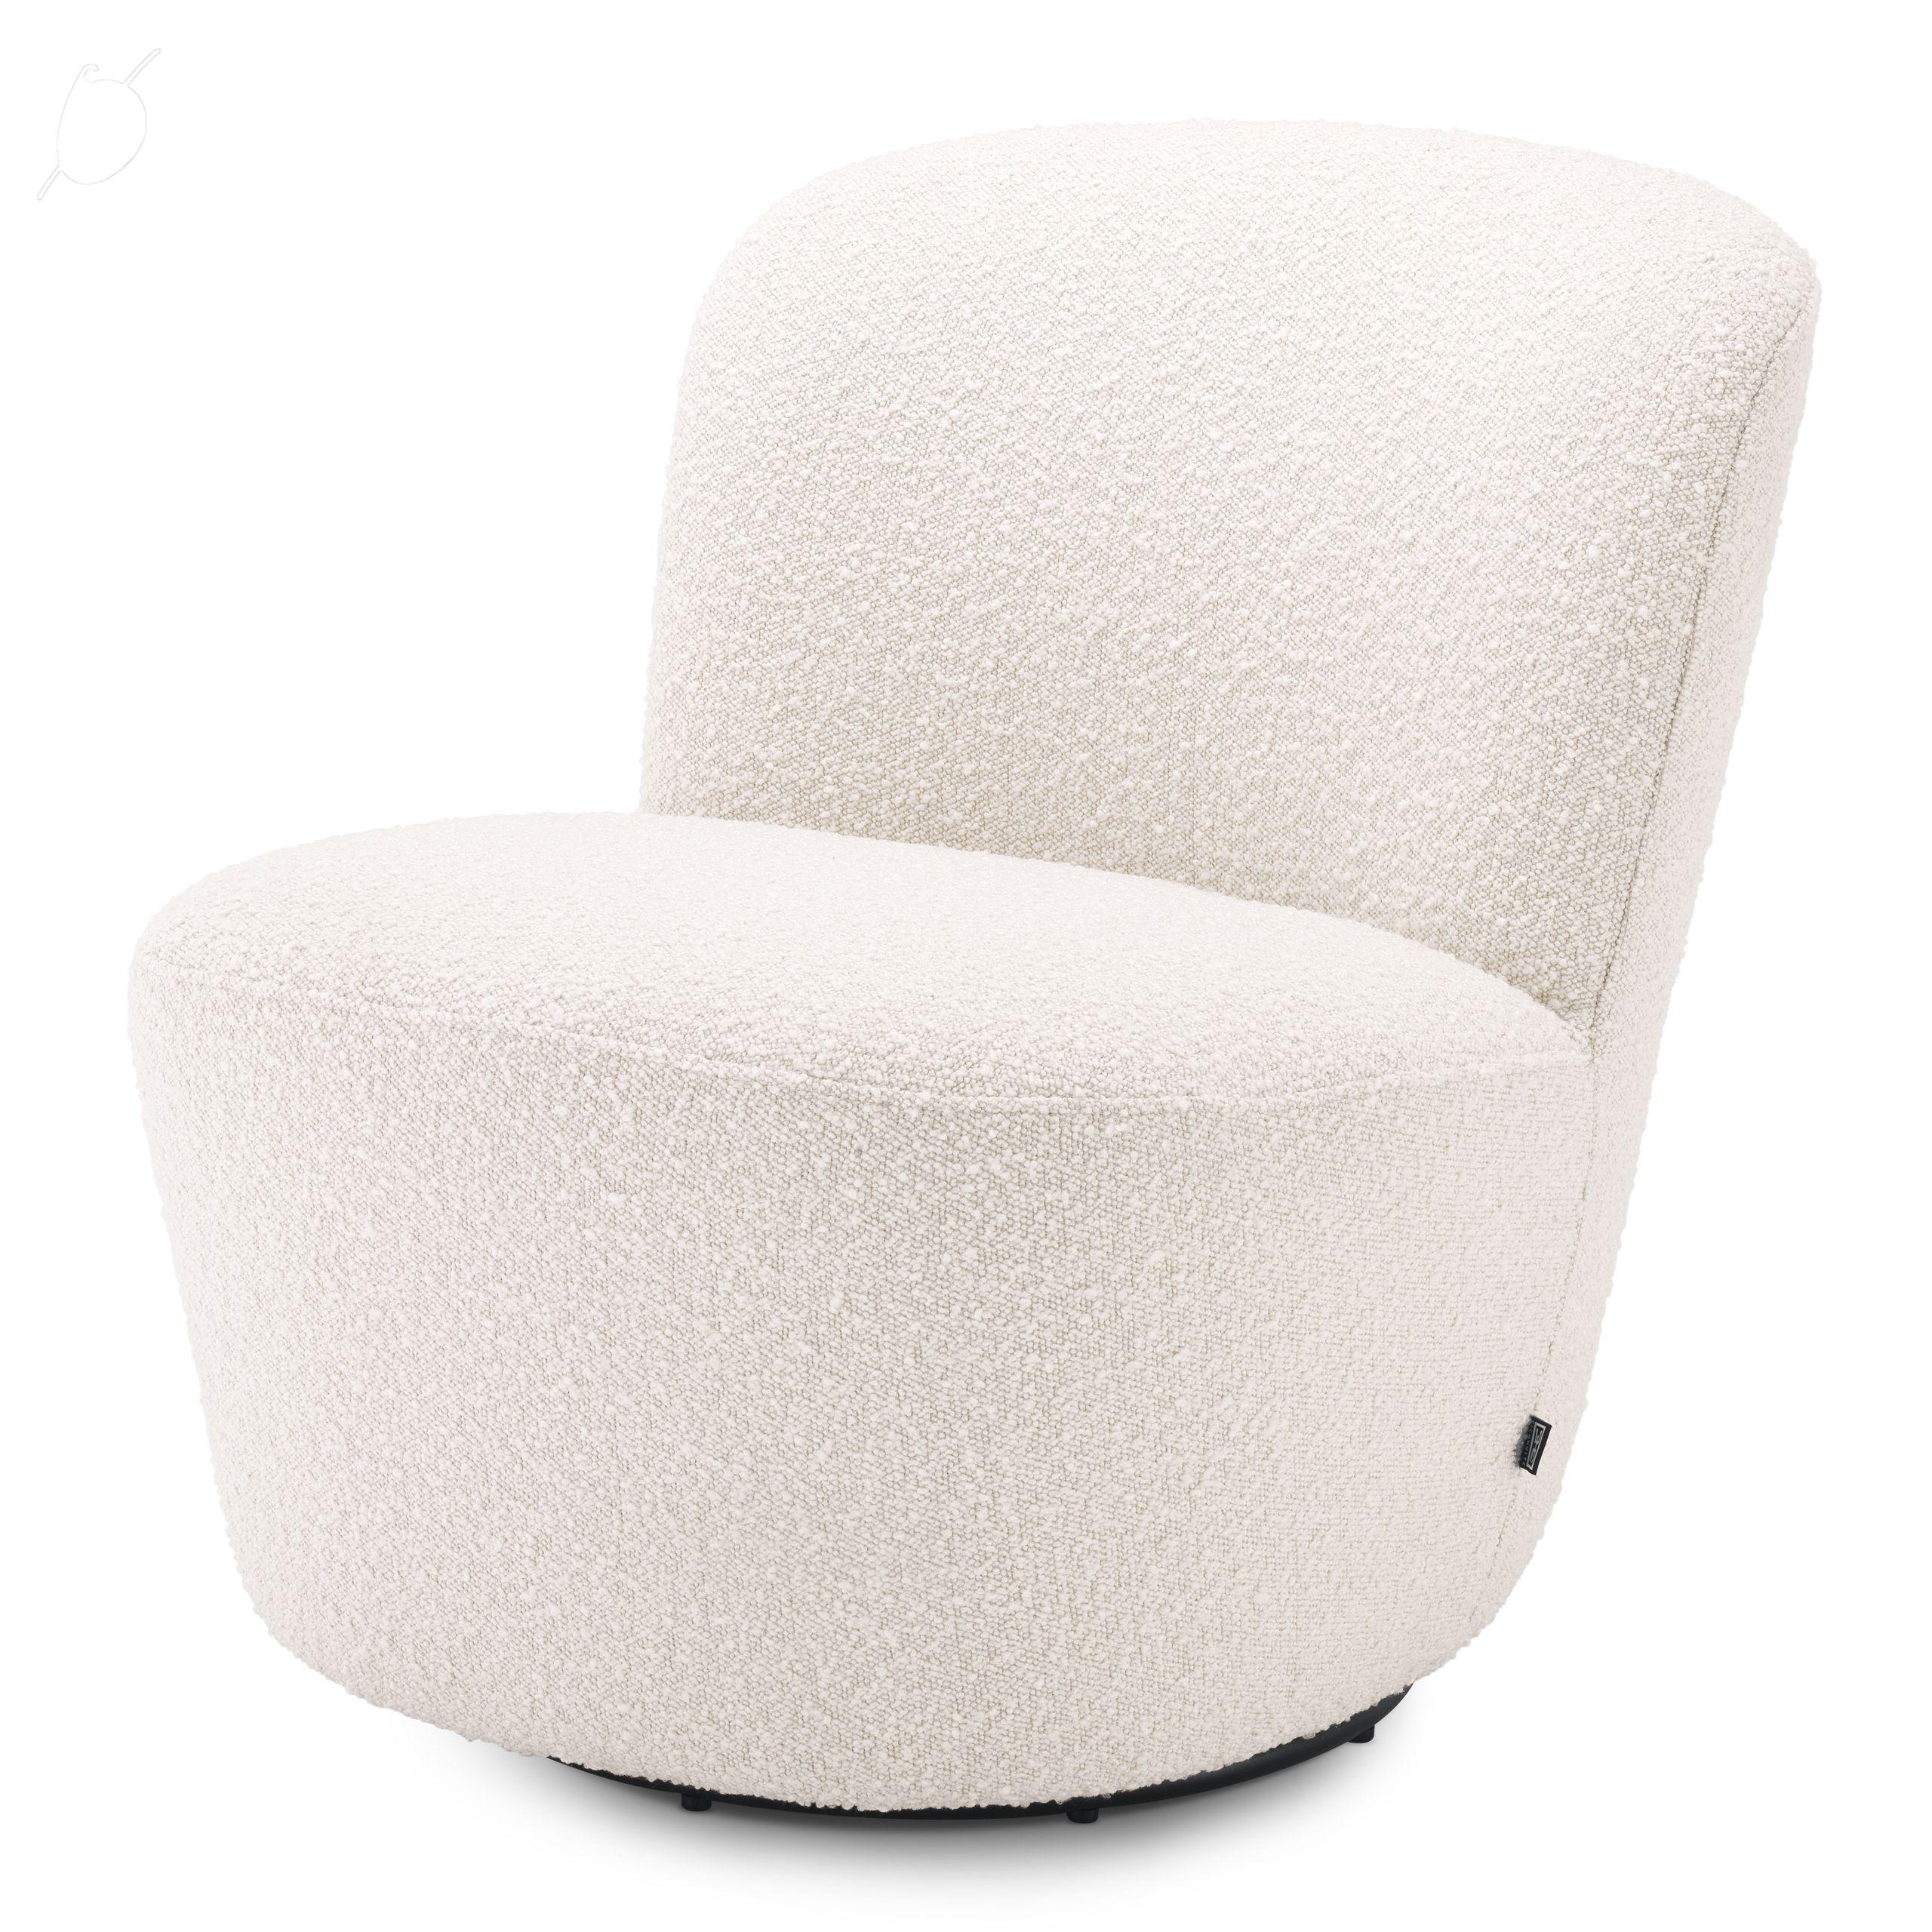 Купить Крутящееся кресло Swivel Chair Doria в интернет-магазине roooms.ru